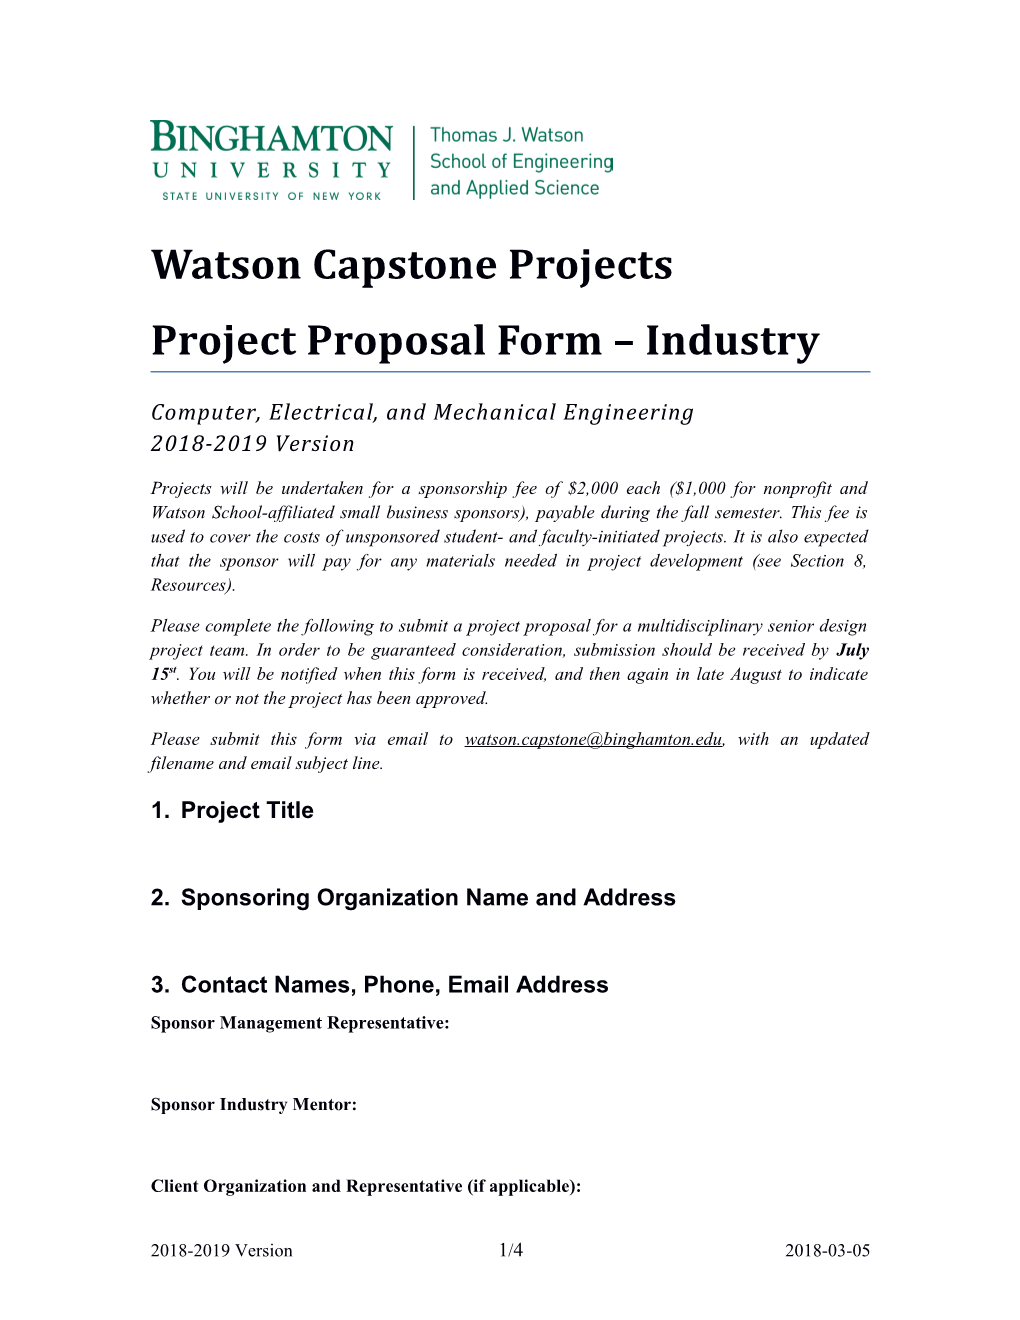 Watson Capstone Projects Project Proposal